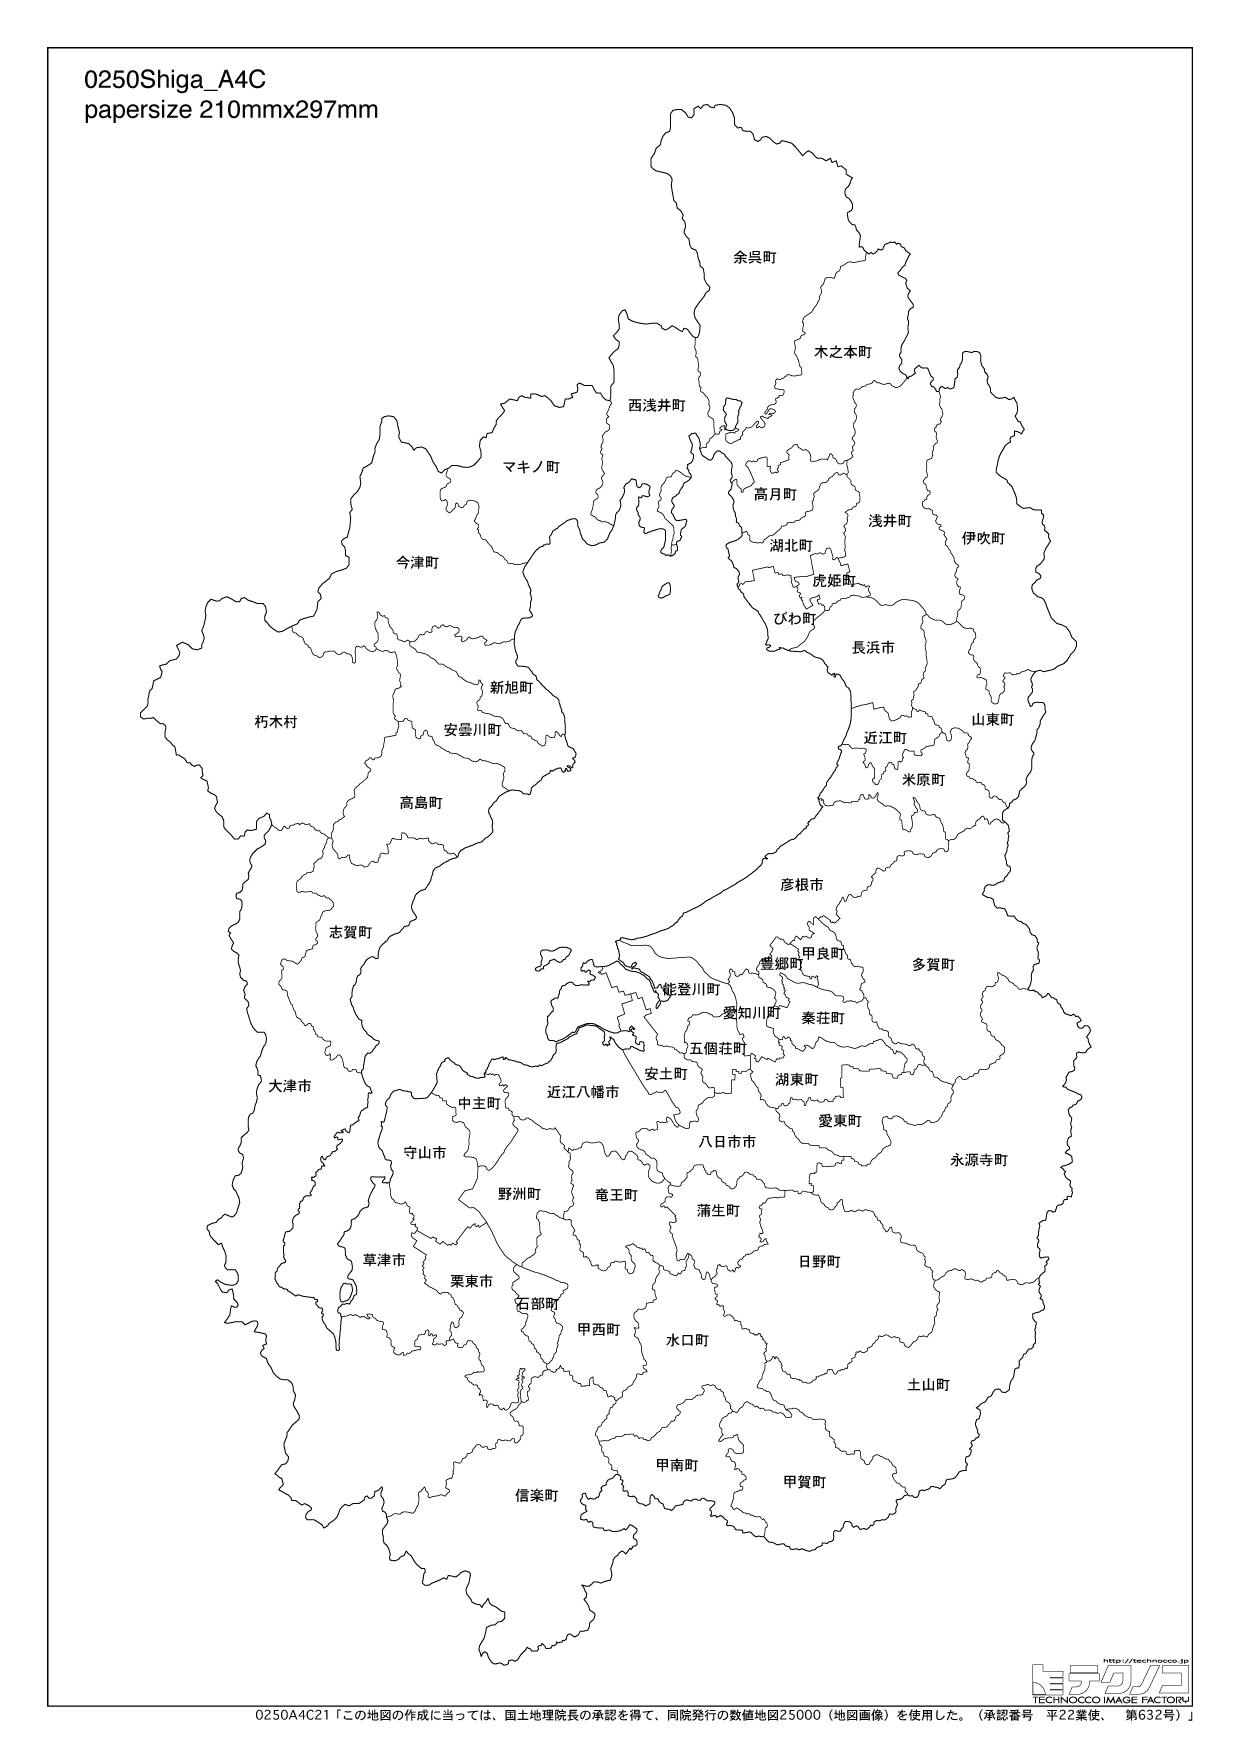 滋賀県の白地図と市町村の合併情報